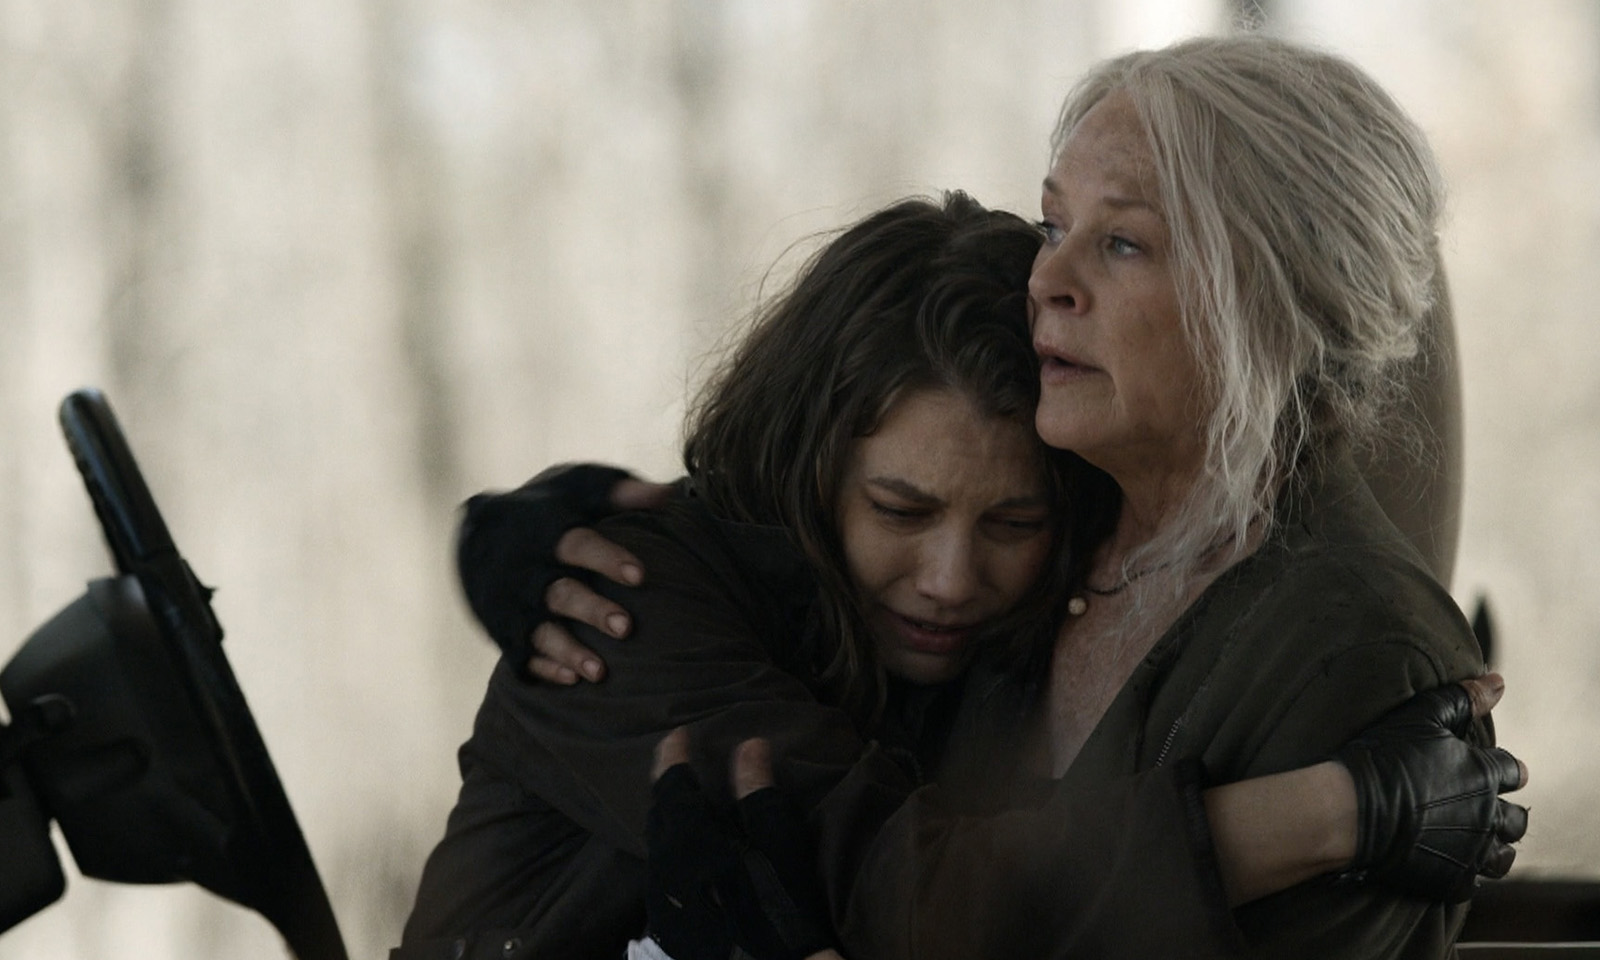 Carol abraçando Maggie enquanto ela chora em cena do episódio 21 da 11ª temporada de The Walking Dead.